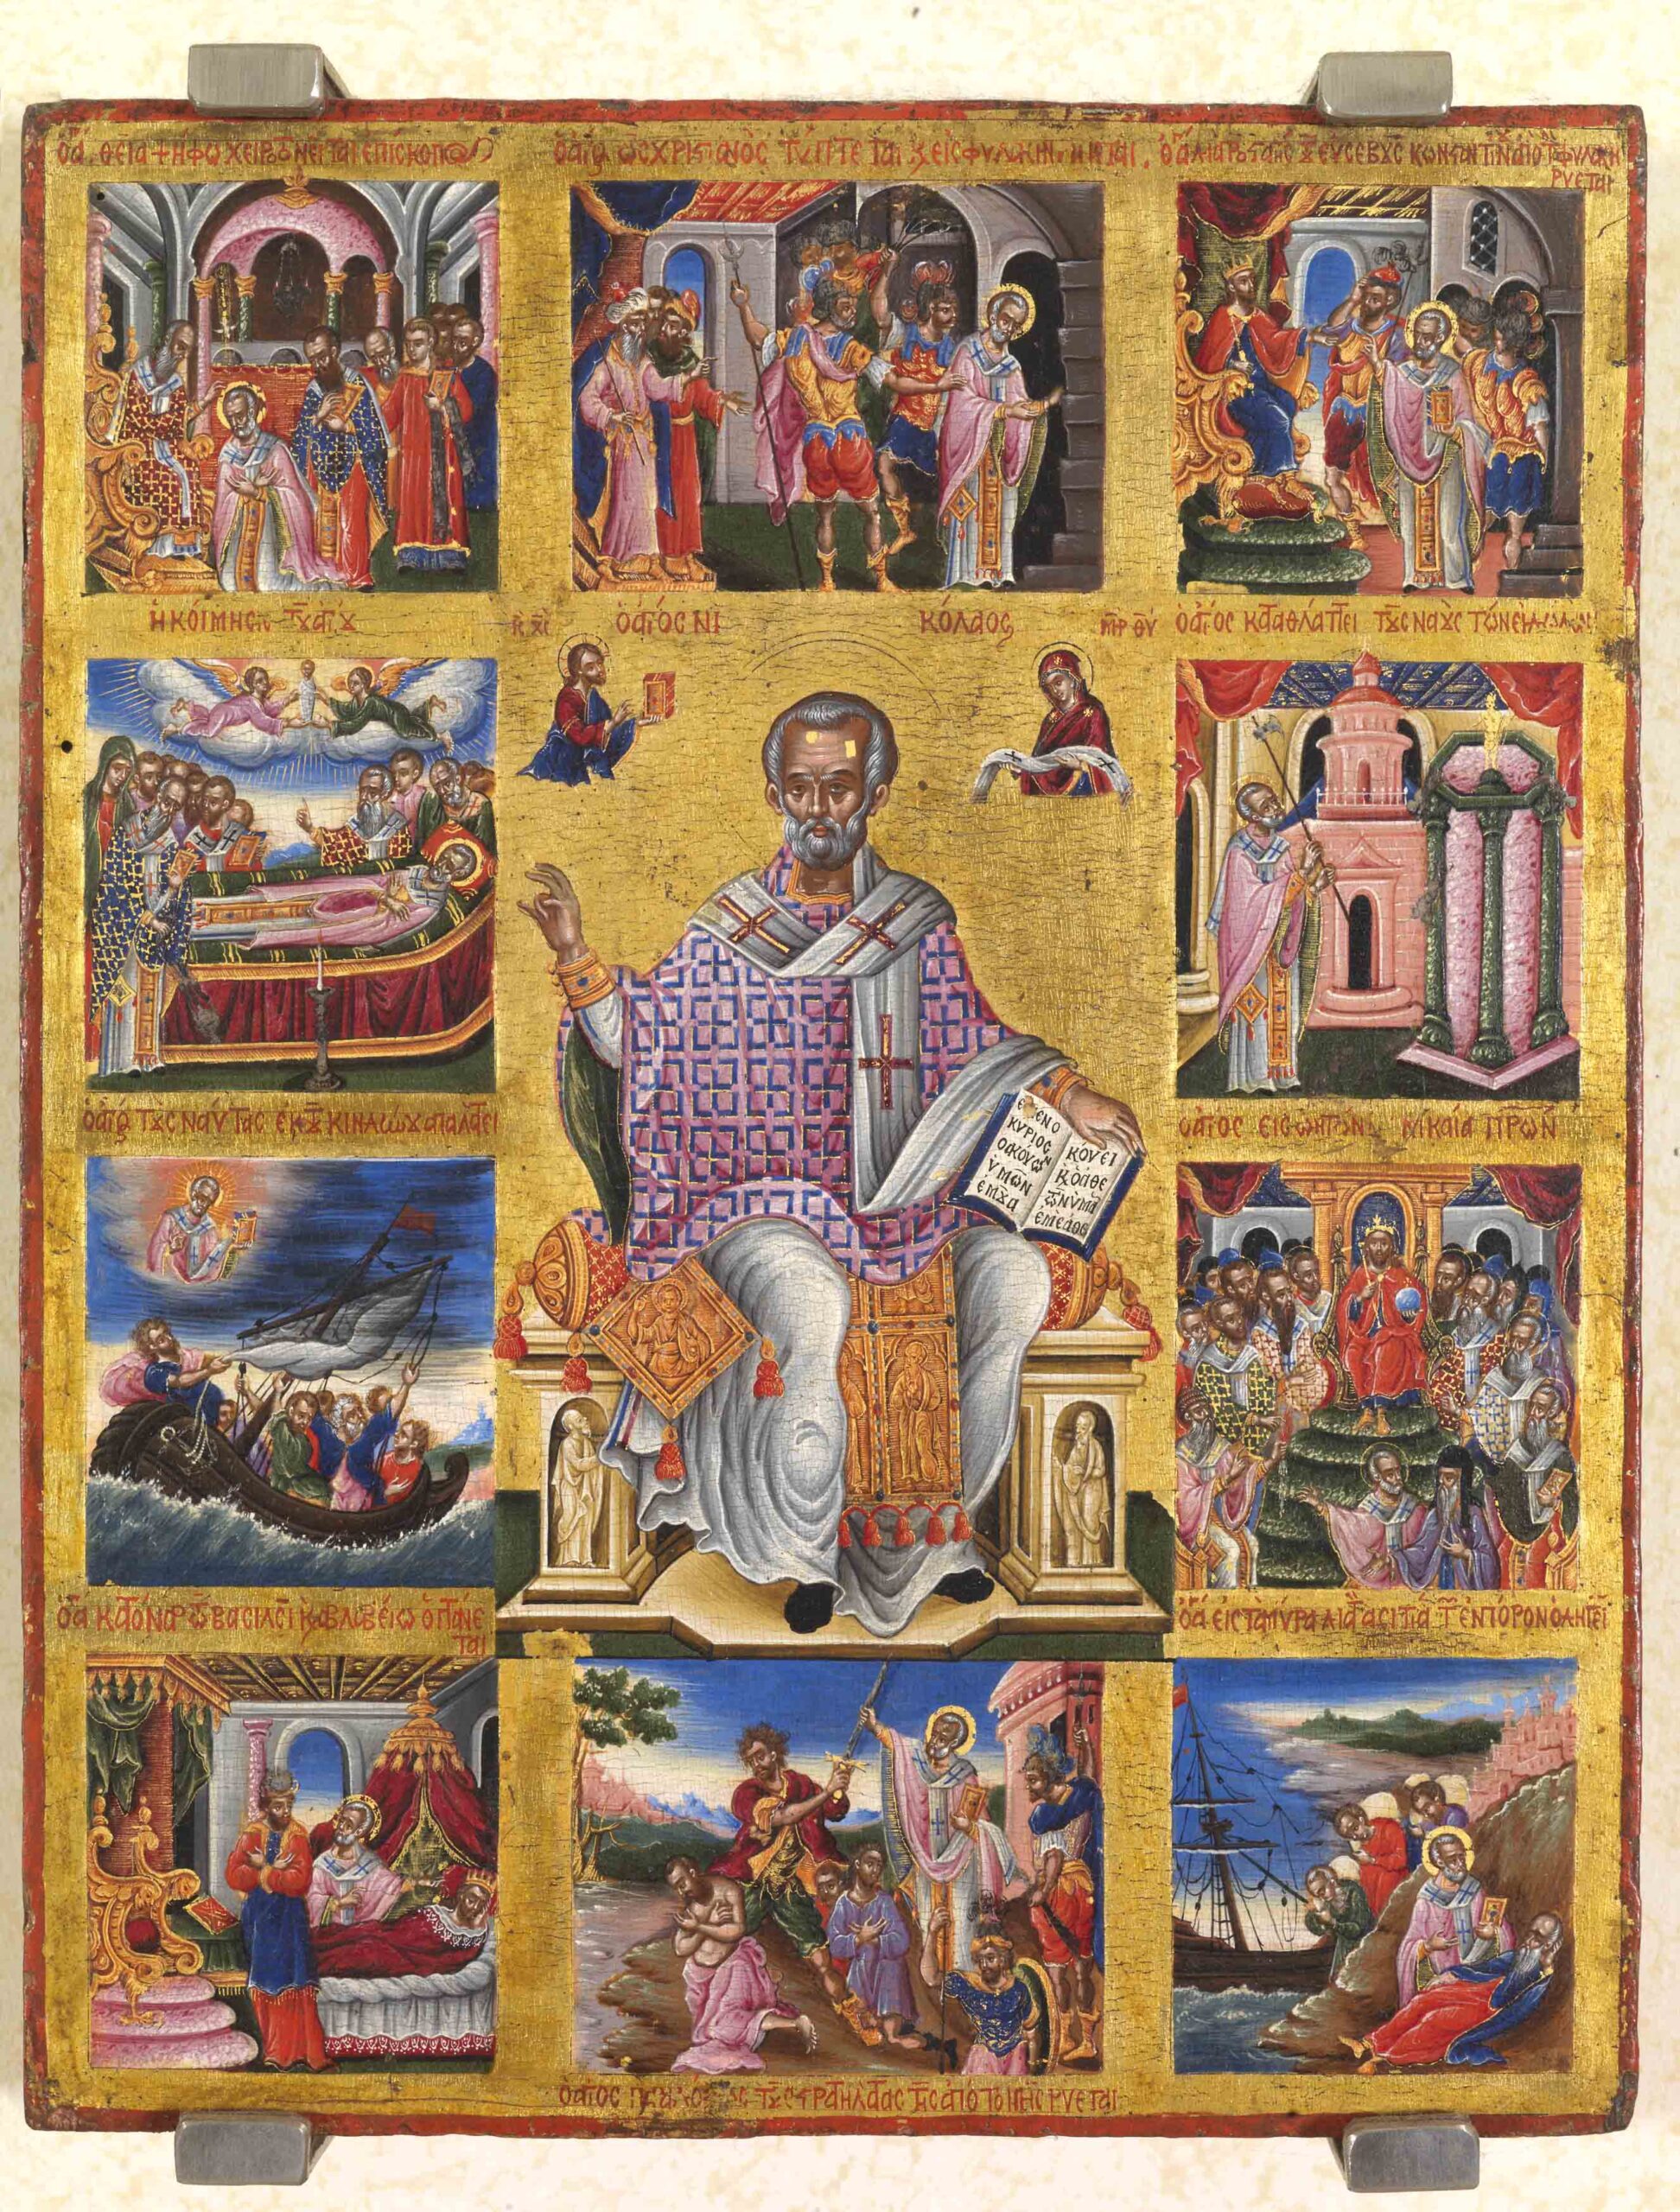 βίος Αγίου Νικολάου, Θεόδωρος Πουλάκης, 17ος αιώνας